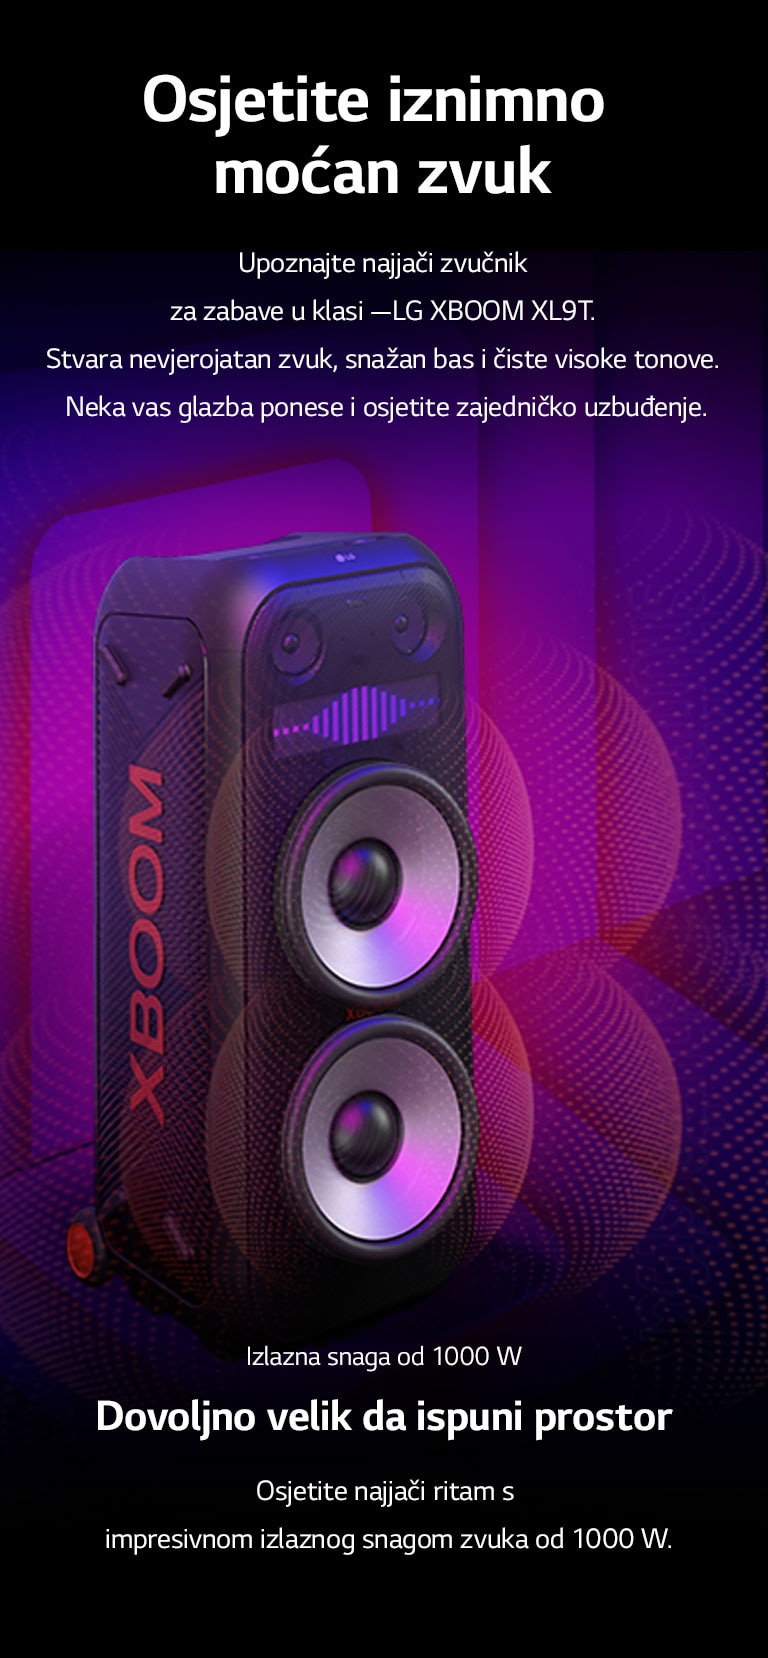 LG XBOOM XL9T nalazi se u beskonačnom prostoru. Na zidu se prikazuje kvadratna zvučna grafika. U sredini zvučnika, uvećani su ogromni zvučnici za duboke tonove (wooferi) od 8 inča kako bi se istaknuo jaki zvuk od 1000 W. Zvučni valovi izlaze iz zvučnika za duboke tonove (woofera). 